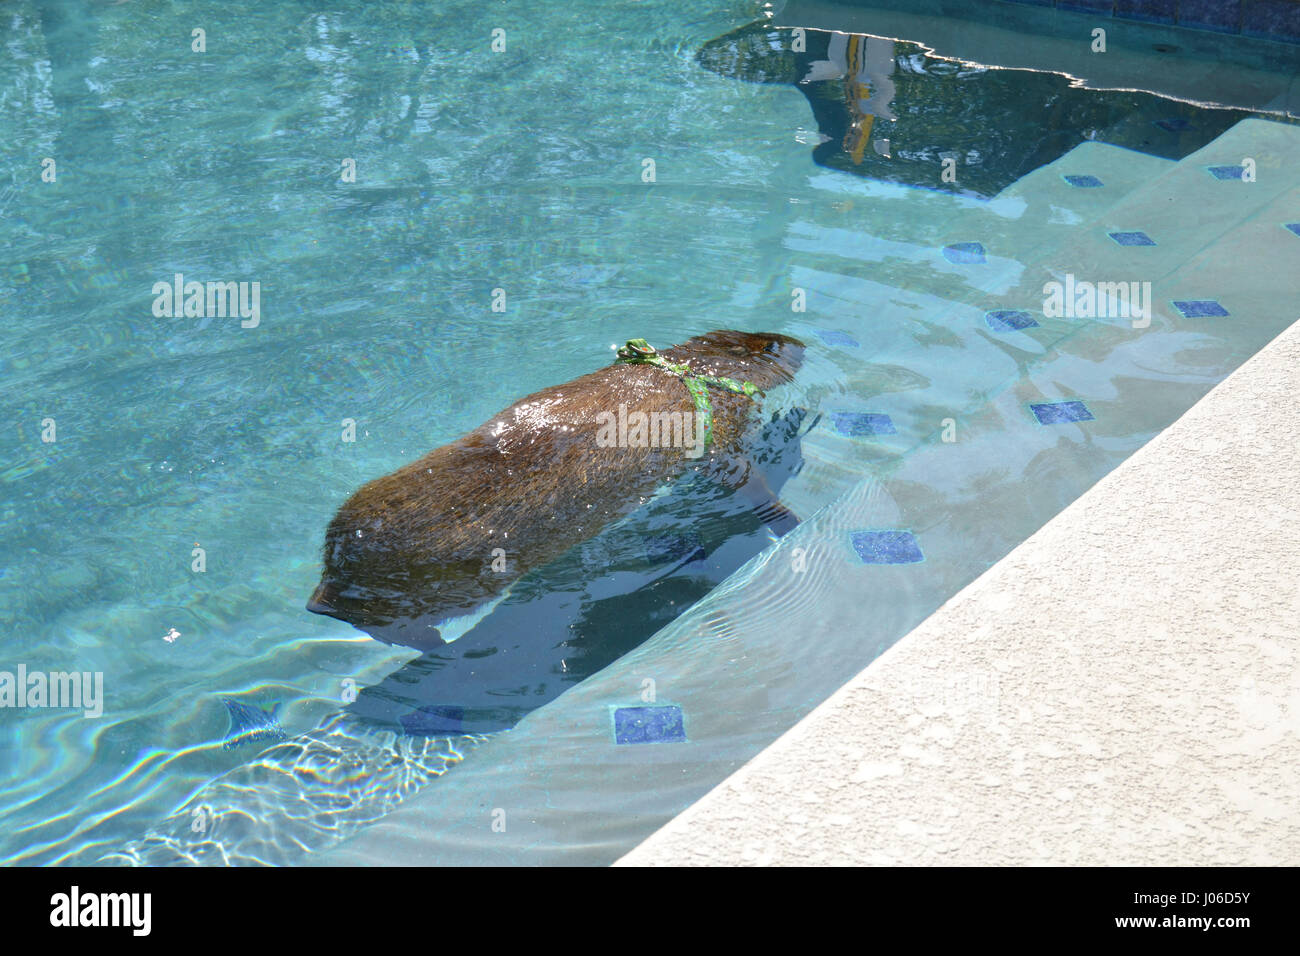 LAS VEGAS, USA: A lustigen Video hat eine riesige aquatische Promi Nagetier genießen Sie ein Bad in seinem eigenen Pool erwischt. Entzückende Bilder und Videos zeigen vier-Fuß-langen, 100-Pfund JoeJoe der Capybara paddeln faul am Pool, unter Wasser tauchen und geschickt auf die Leiter, die er schaut, wie er benutzen wird, um heraus klettern auftauchen. Die Bilder und Clips wurden von JoeJoe Besitzer Cody Kennedy in ihrem Haus in Las Vegas aufgenommen. Stockfoto